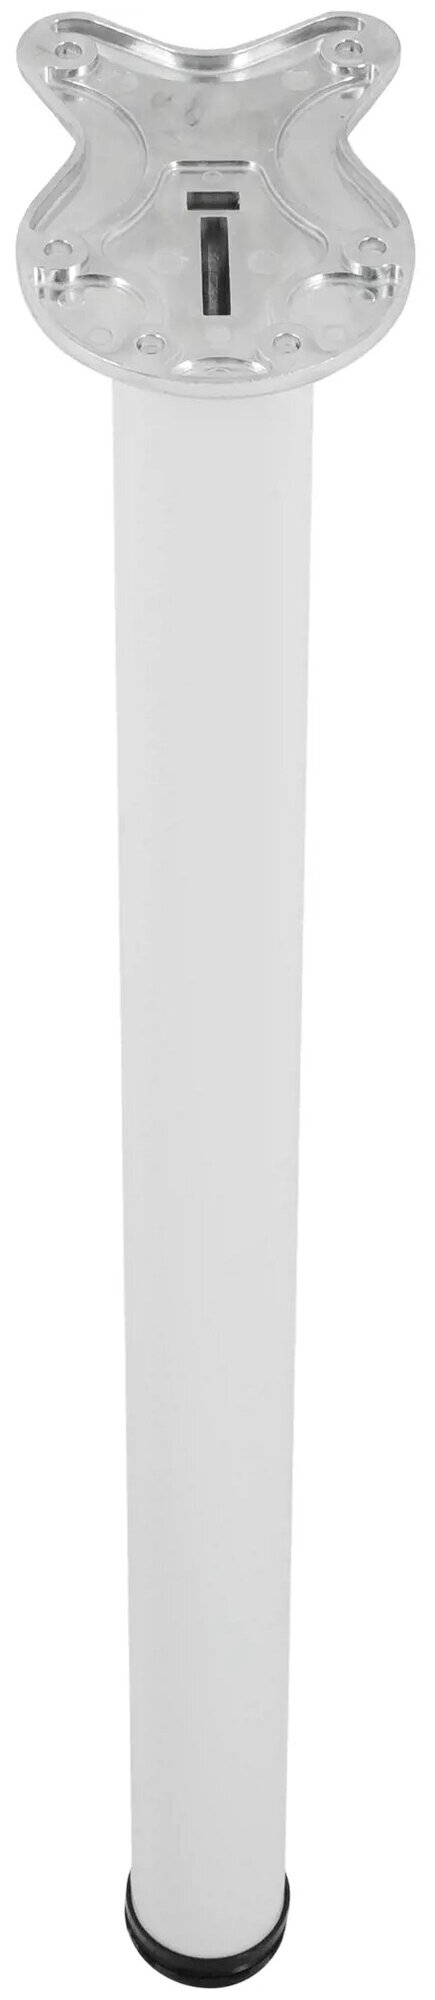 Ножка мебельная складная Edson FL-010 71 см сталь цвет белый